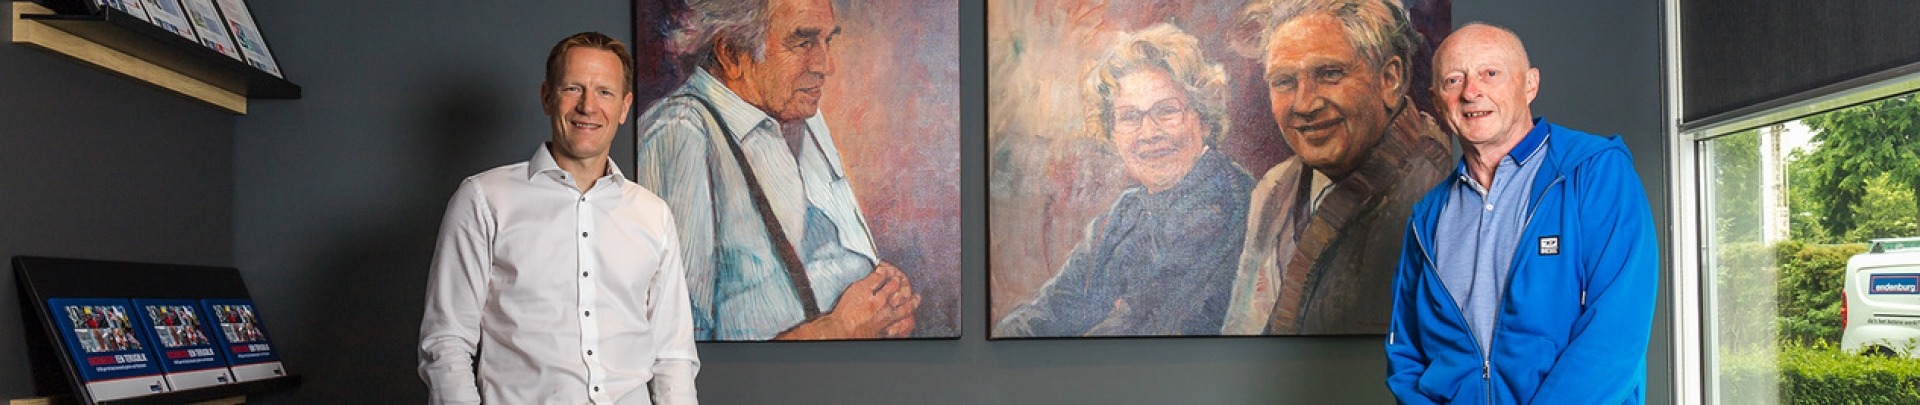 2 mannen staan voor een schilderij met 2 mannen en een vrouw